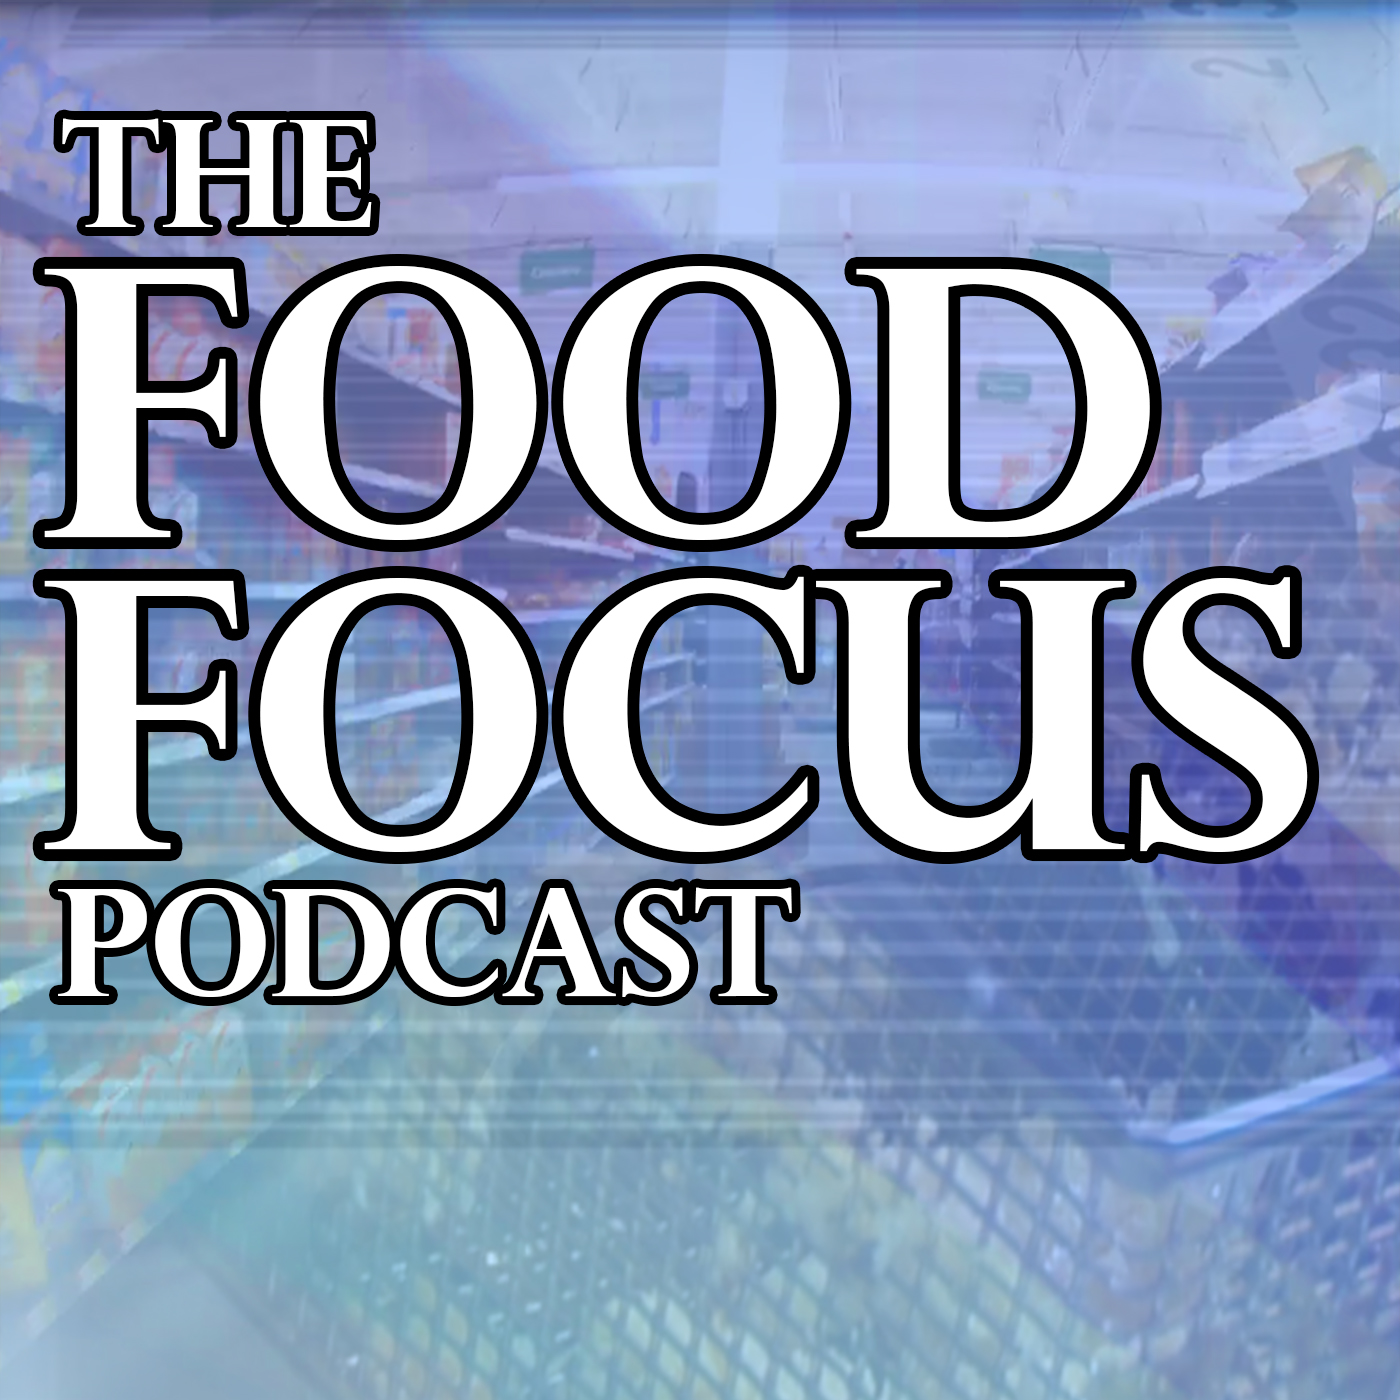 Food Focus 3/15/17 – Ruby Tuesday Considers Sale, Del Taco Remains En Fuego